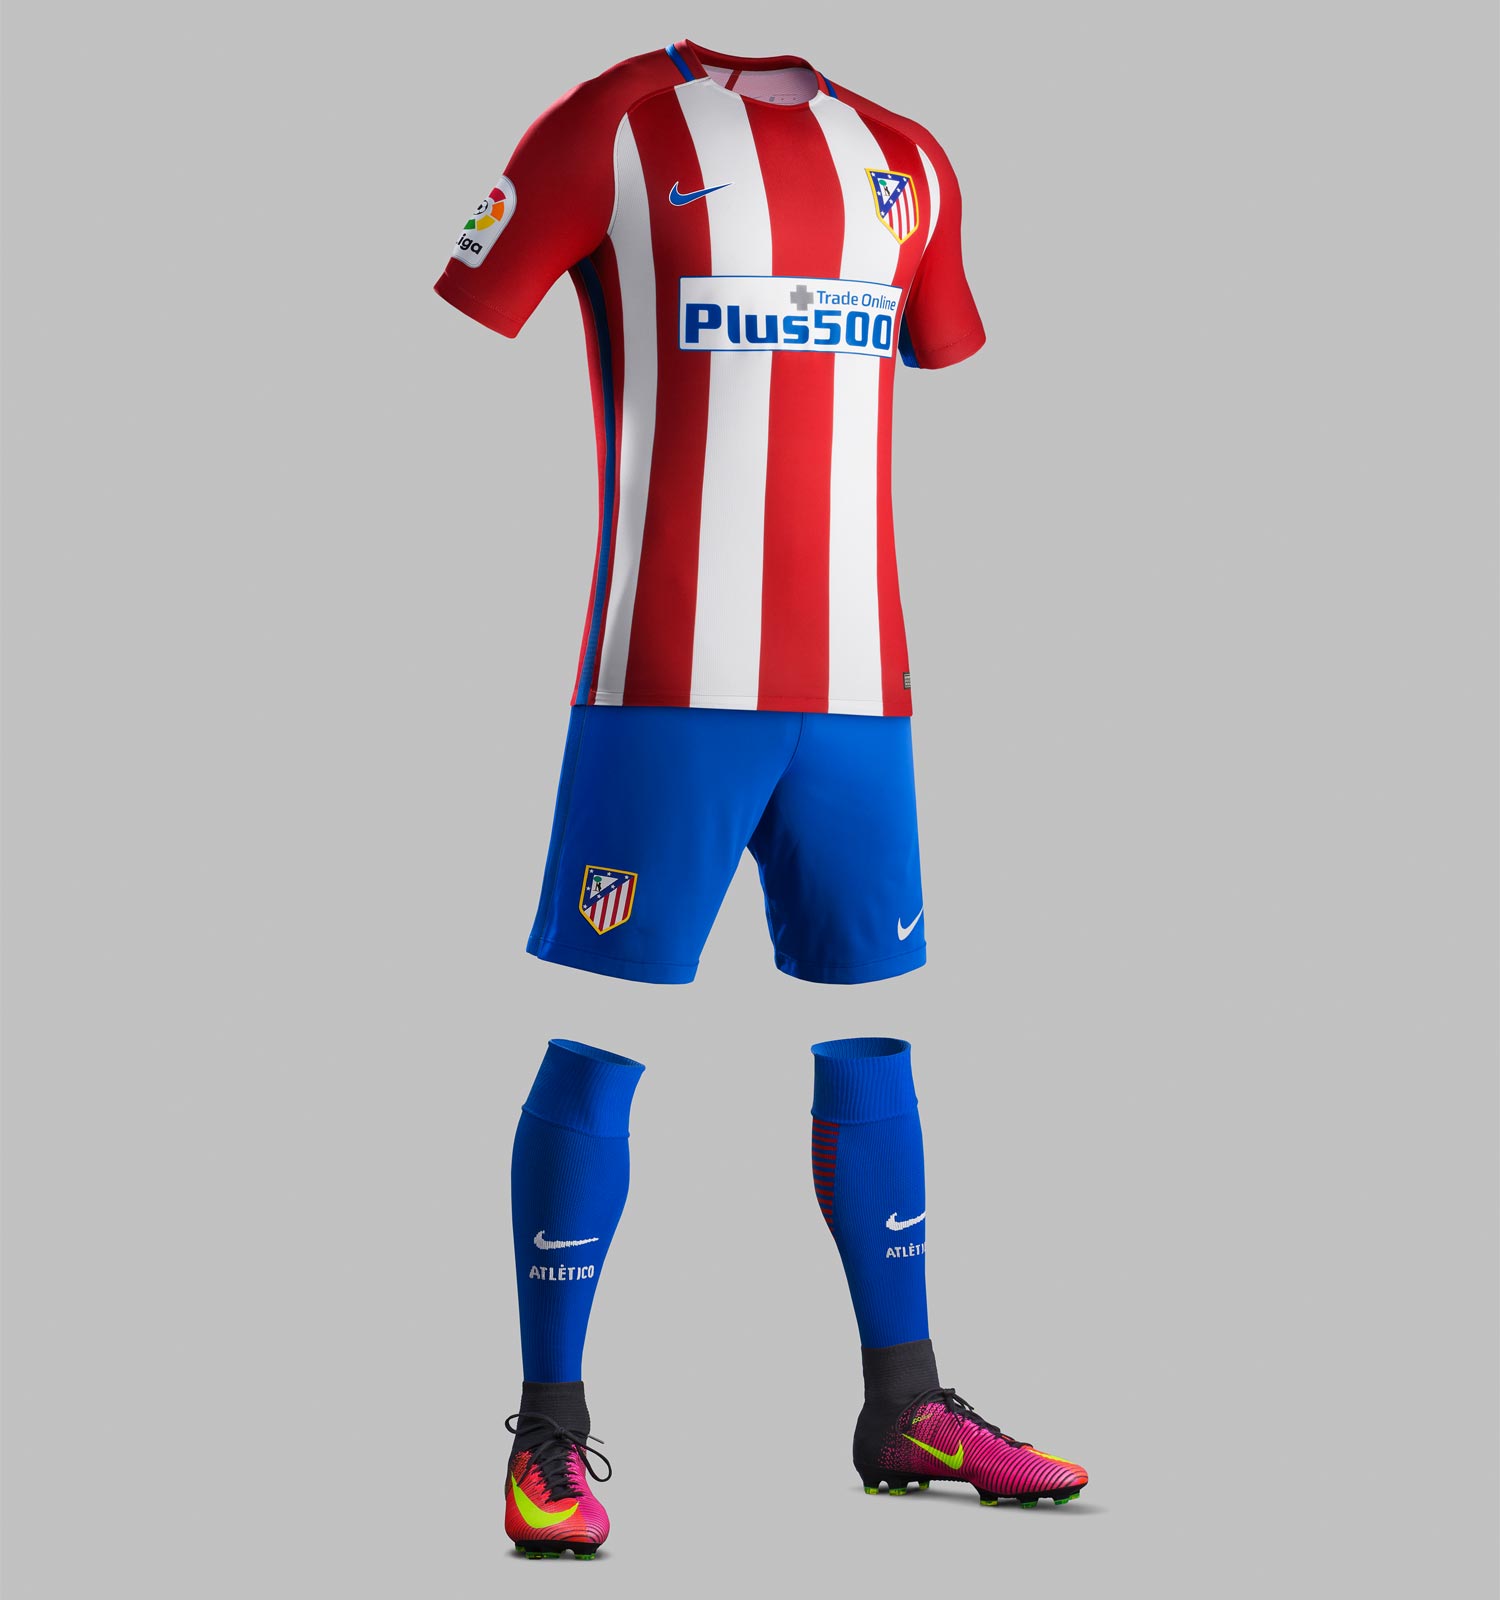 Atlético Madrid 16-17 Home Kit Released - Footy Headlines